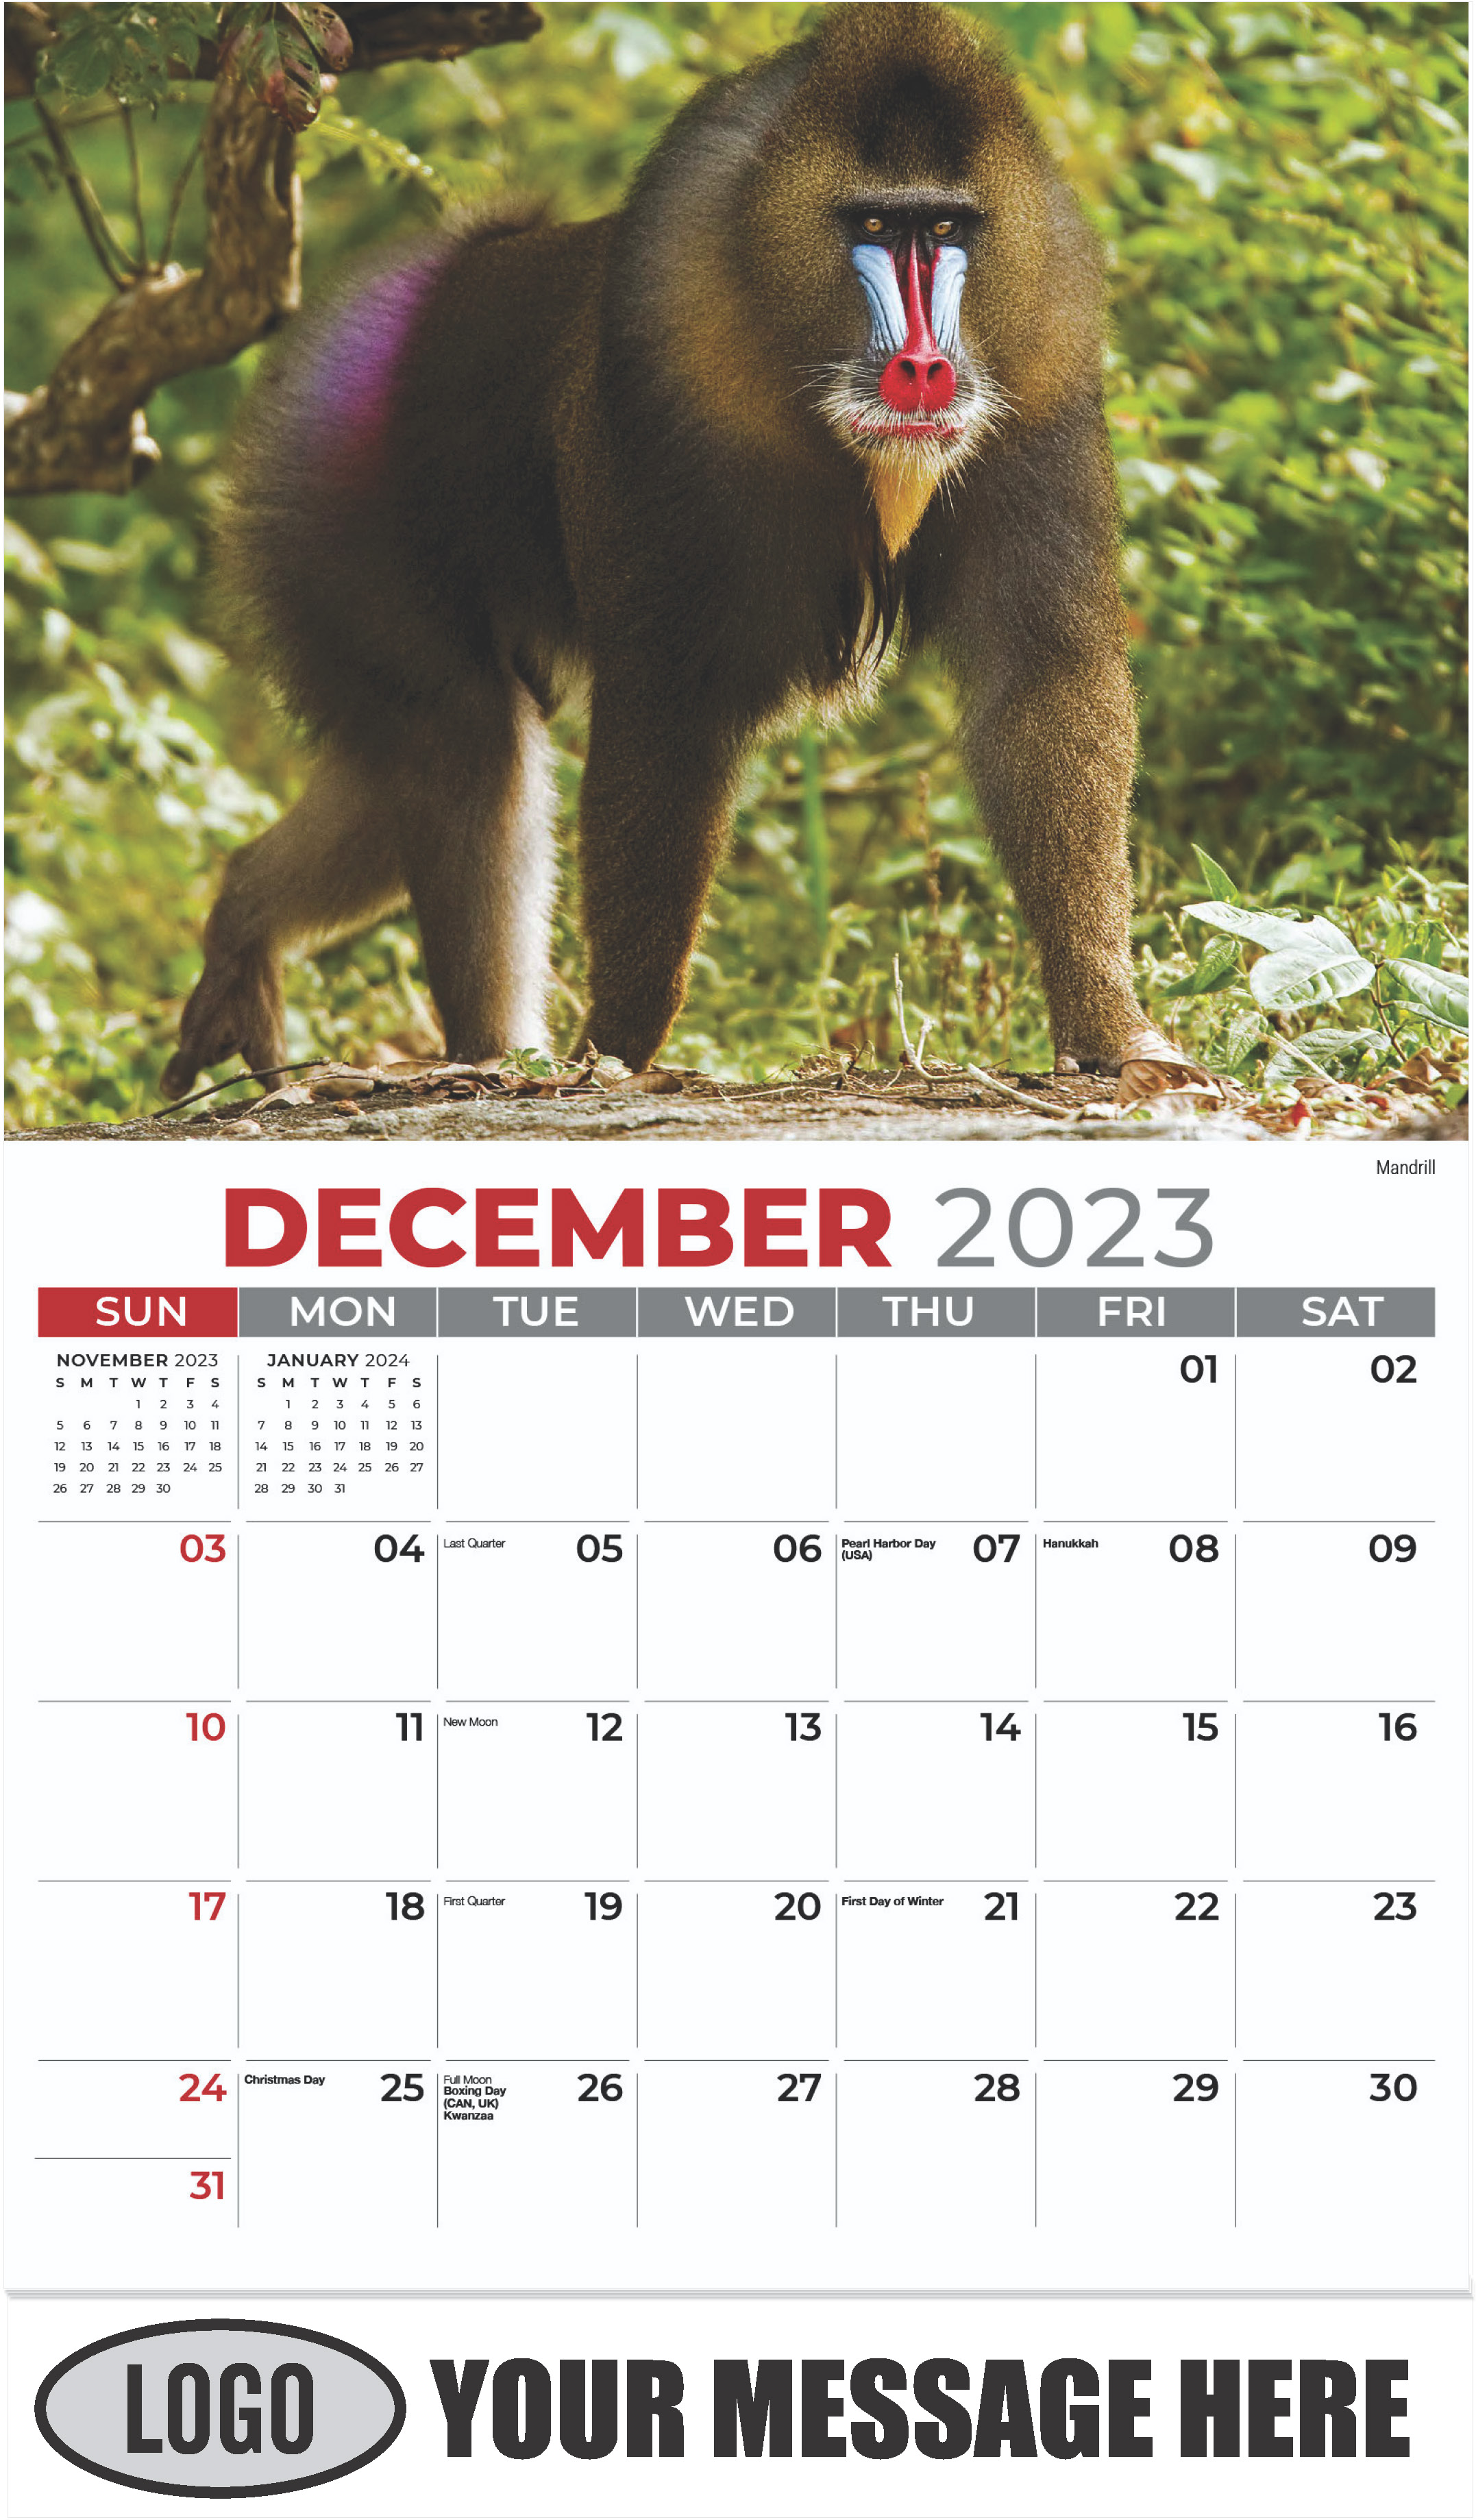 Mandrill - December 2023 - International Wildlife 2023 Promotional Calendar